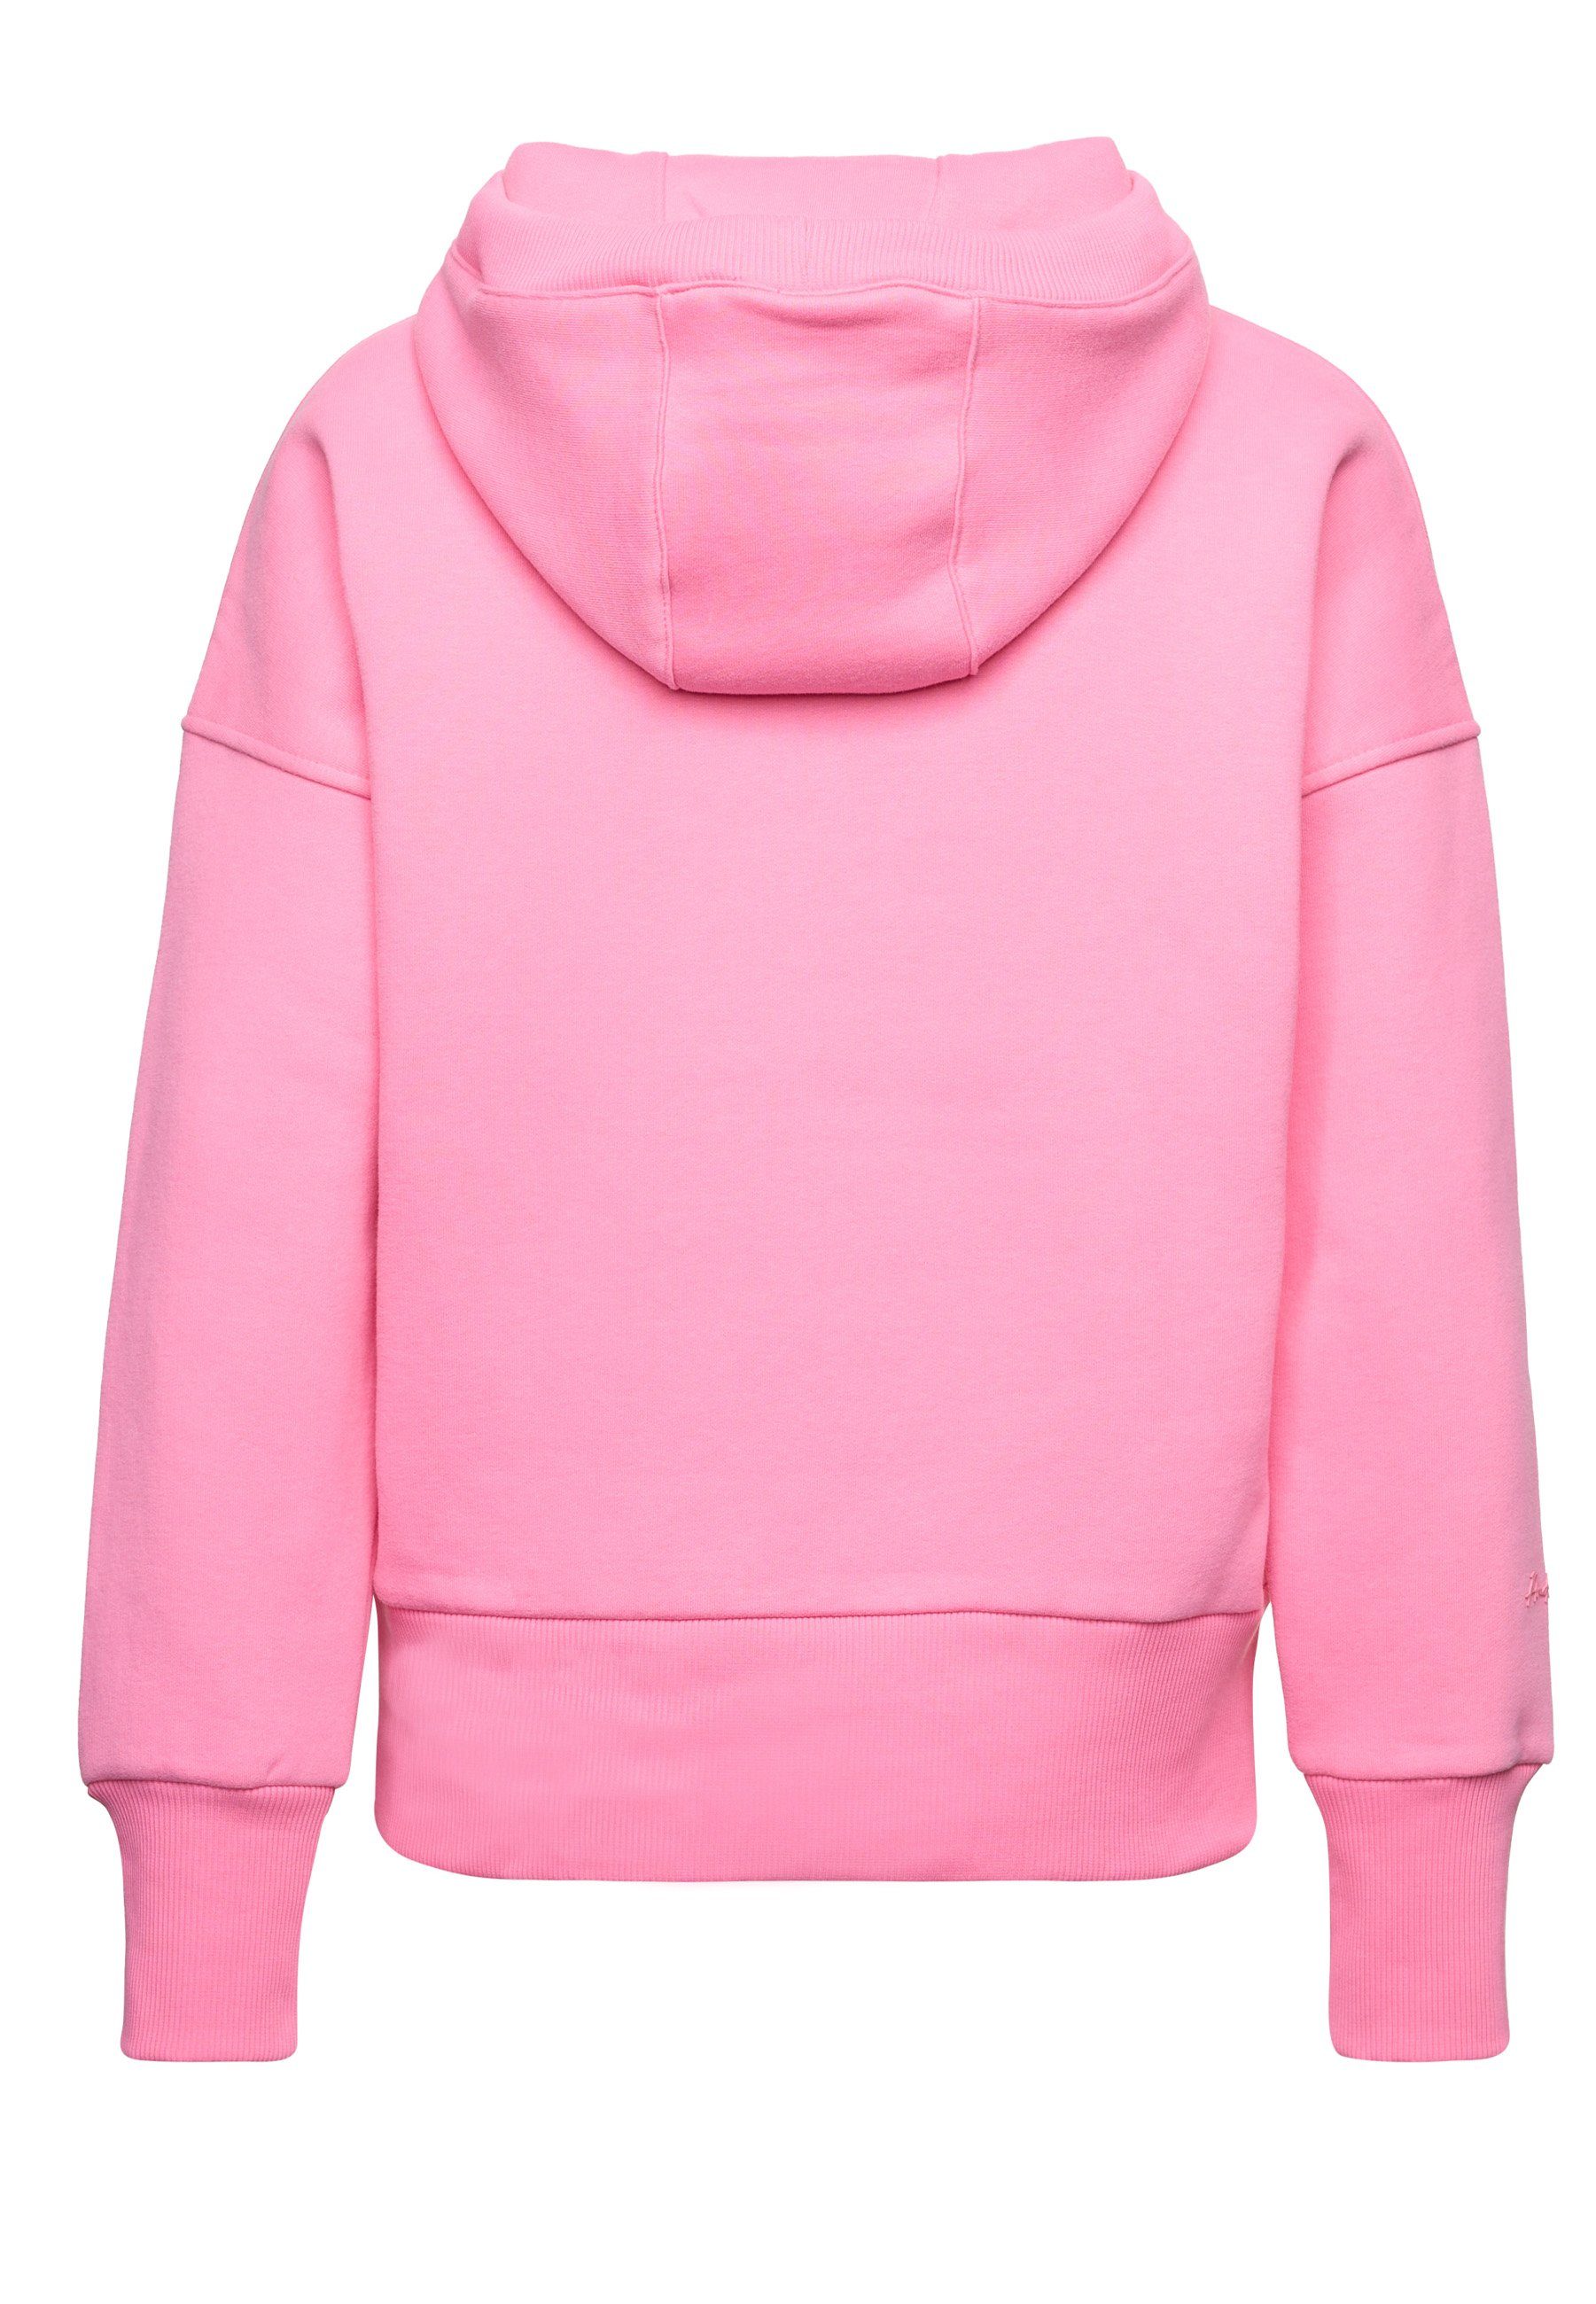 Decay im rosa klassischen Design Kapuzensweatshirt